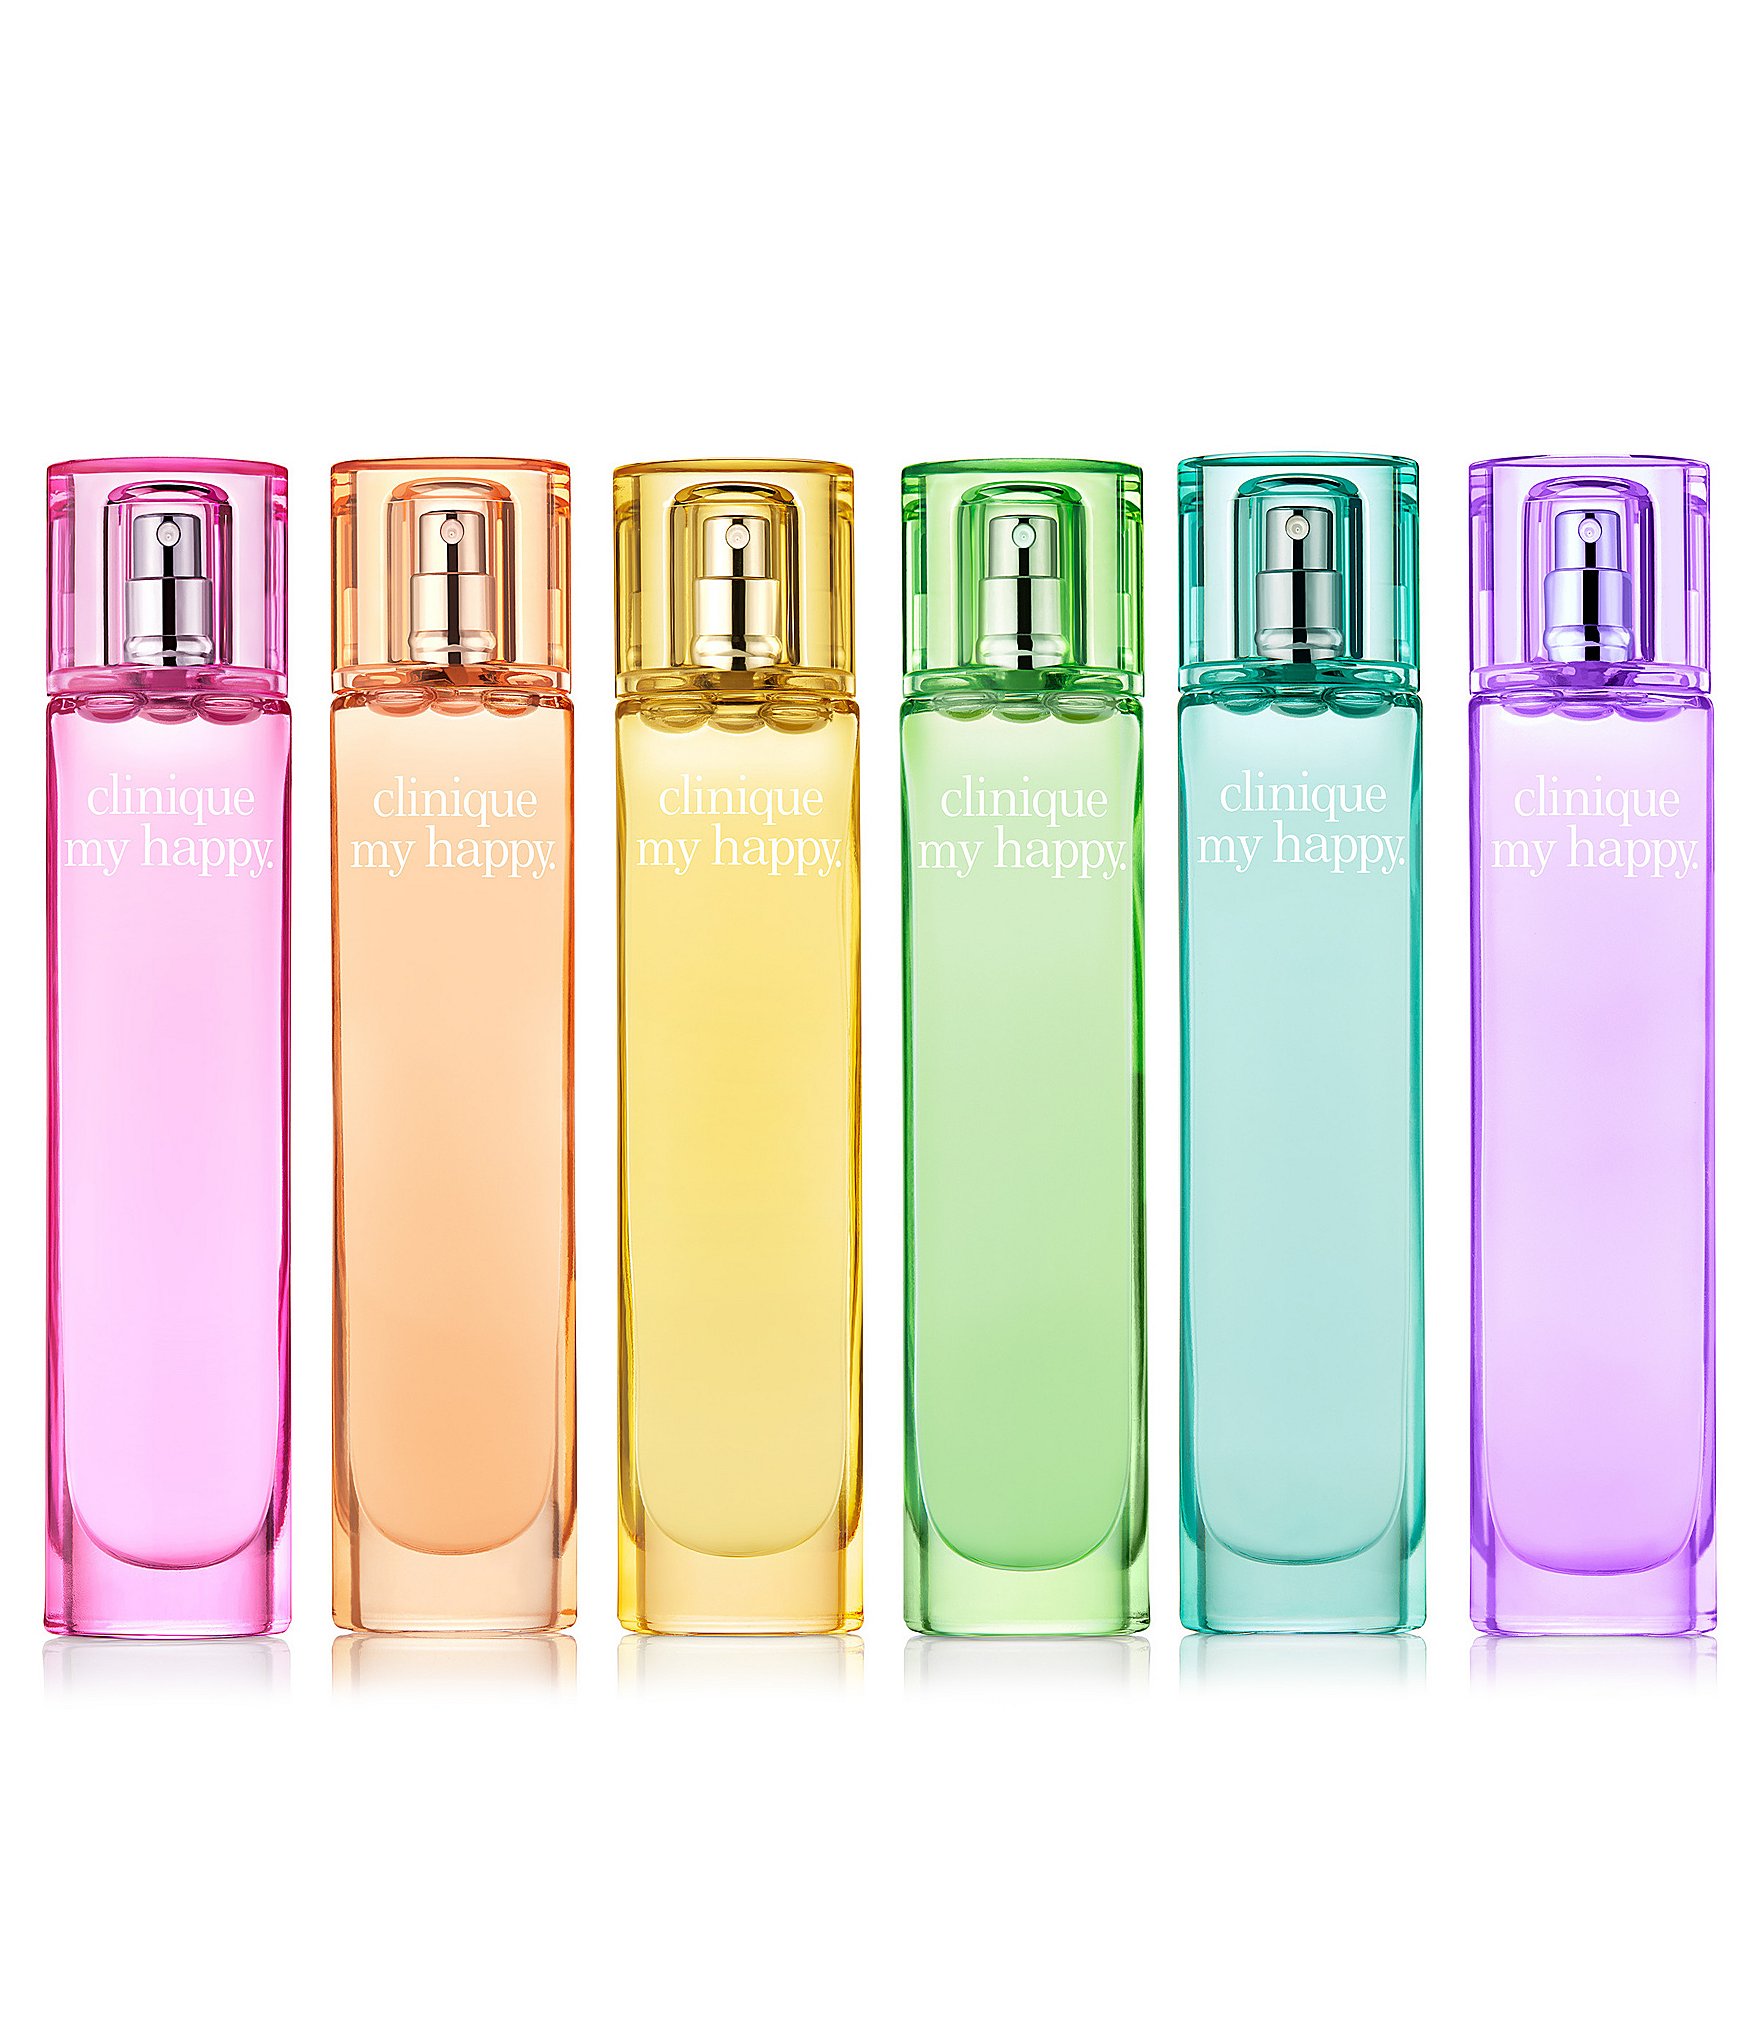 rechter vooroordeel Rechthoek Clinique Fragrance, Perfume & Cologne | Dillard's